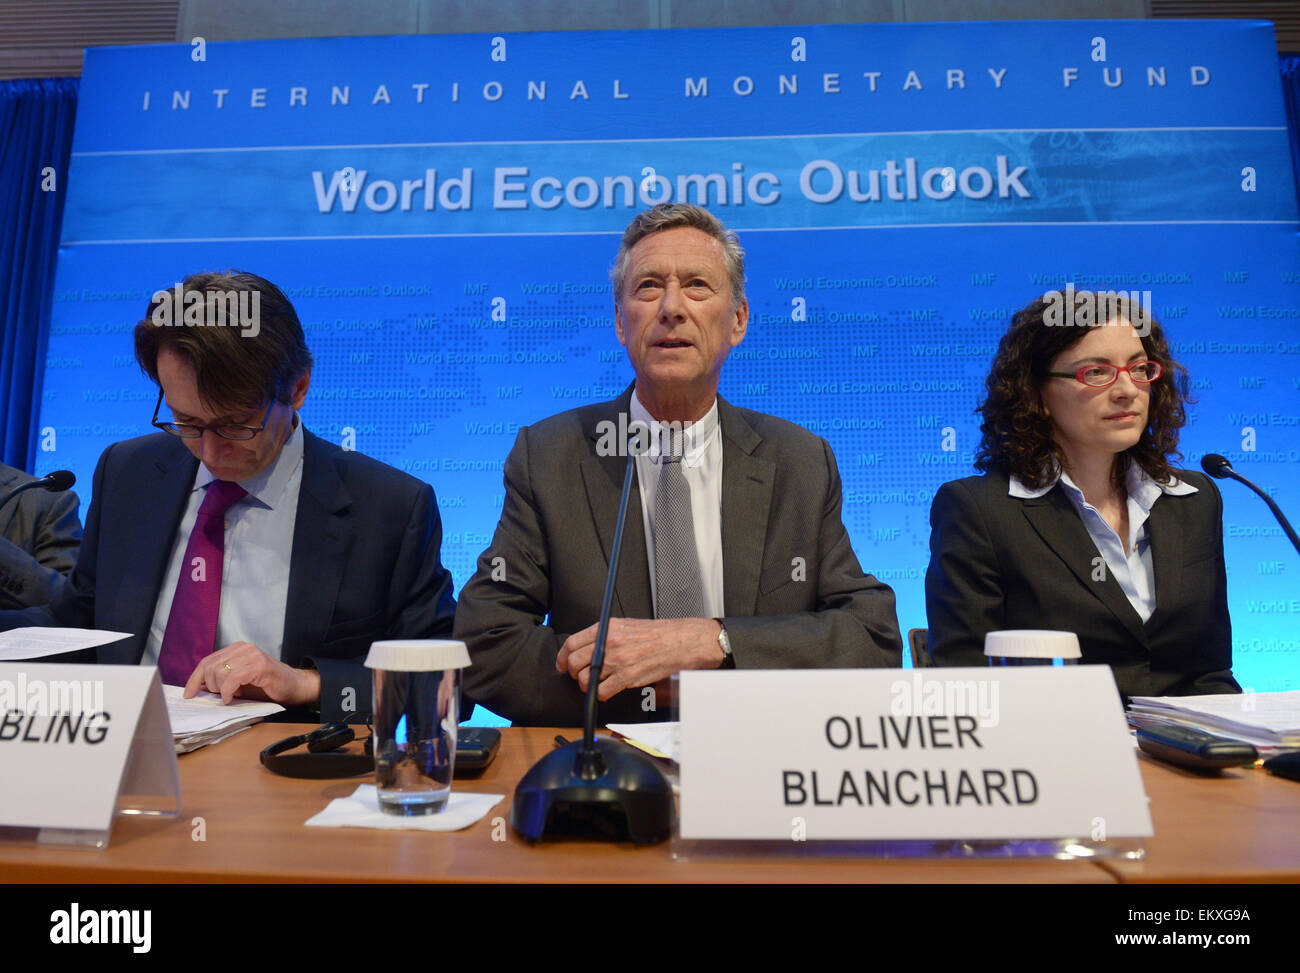 Washington, DC, USA. 14 avr, 2015. (C) Olivier Blanchard, chef économiste du Fonds monétaire international (FMI), prend la parole lors d'un point de presse sur les perspectives de l'économie mondiale au siège du FMI à Washington, DC, la capitale des États-Unis, le 14 avril 2015. Le FMI a déclaré mardi que l'économie mondiale devrait augmenter de 3,5 pour cent en 2015, à égalité avec la prévision faite en janvier. Credit : Yin Bogu/Xinhua/Alamy Live News Banque D'Images